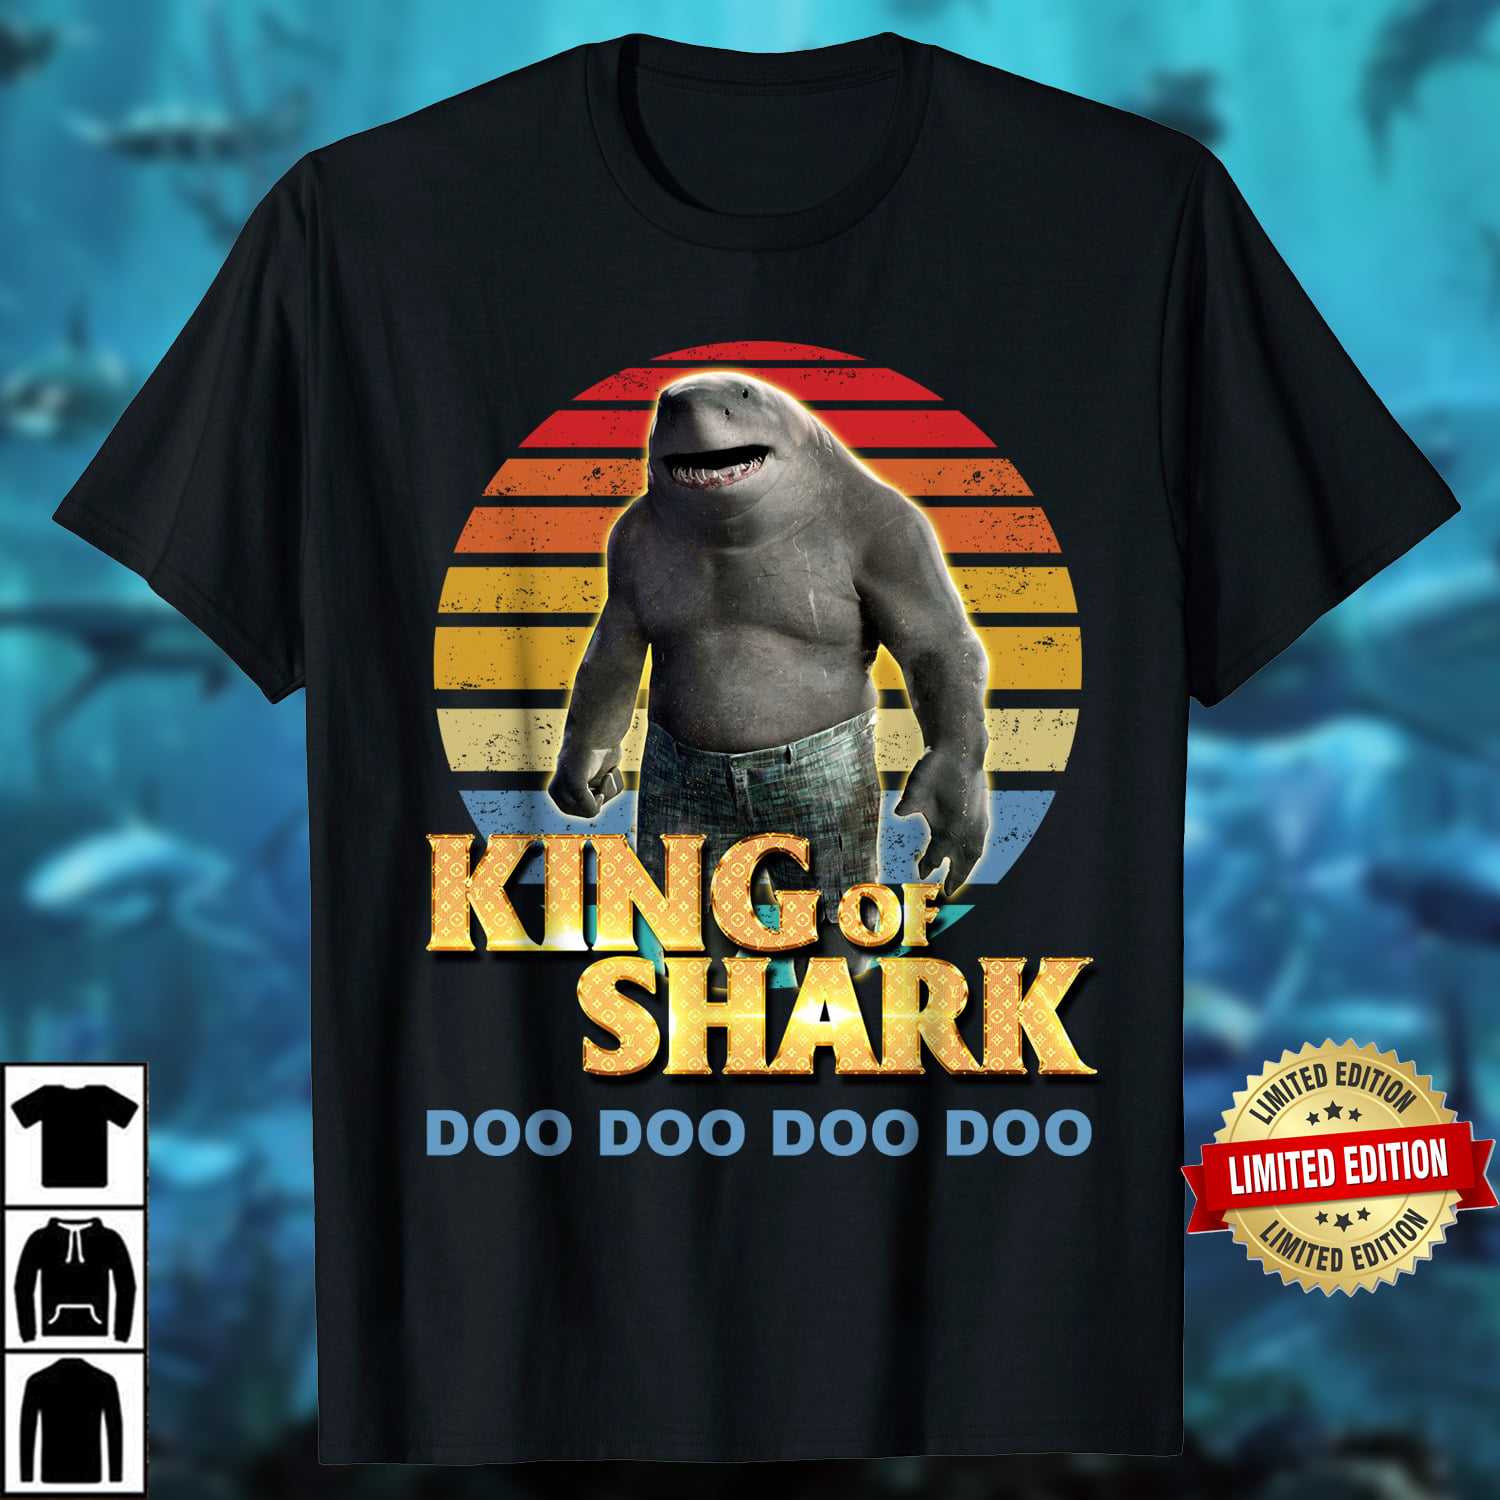 King of Shark - Baby Shark Doo Doo, Suicide Squat movie